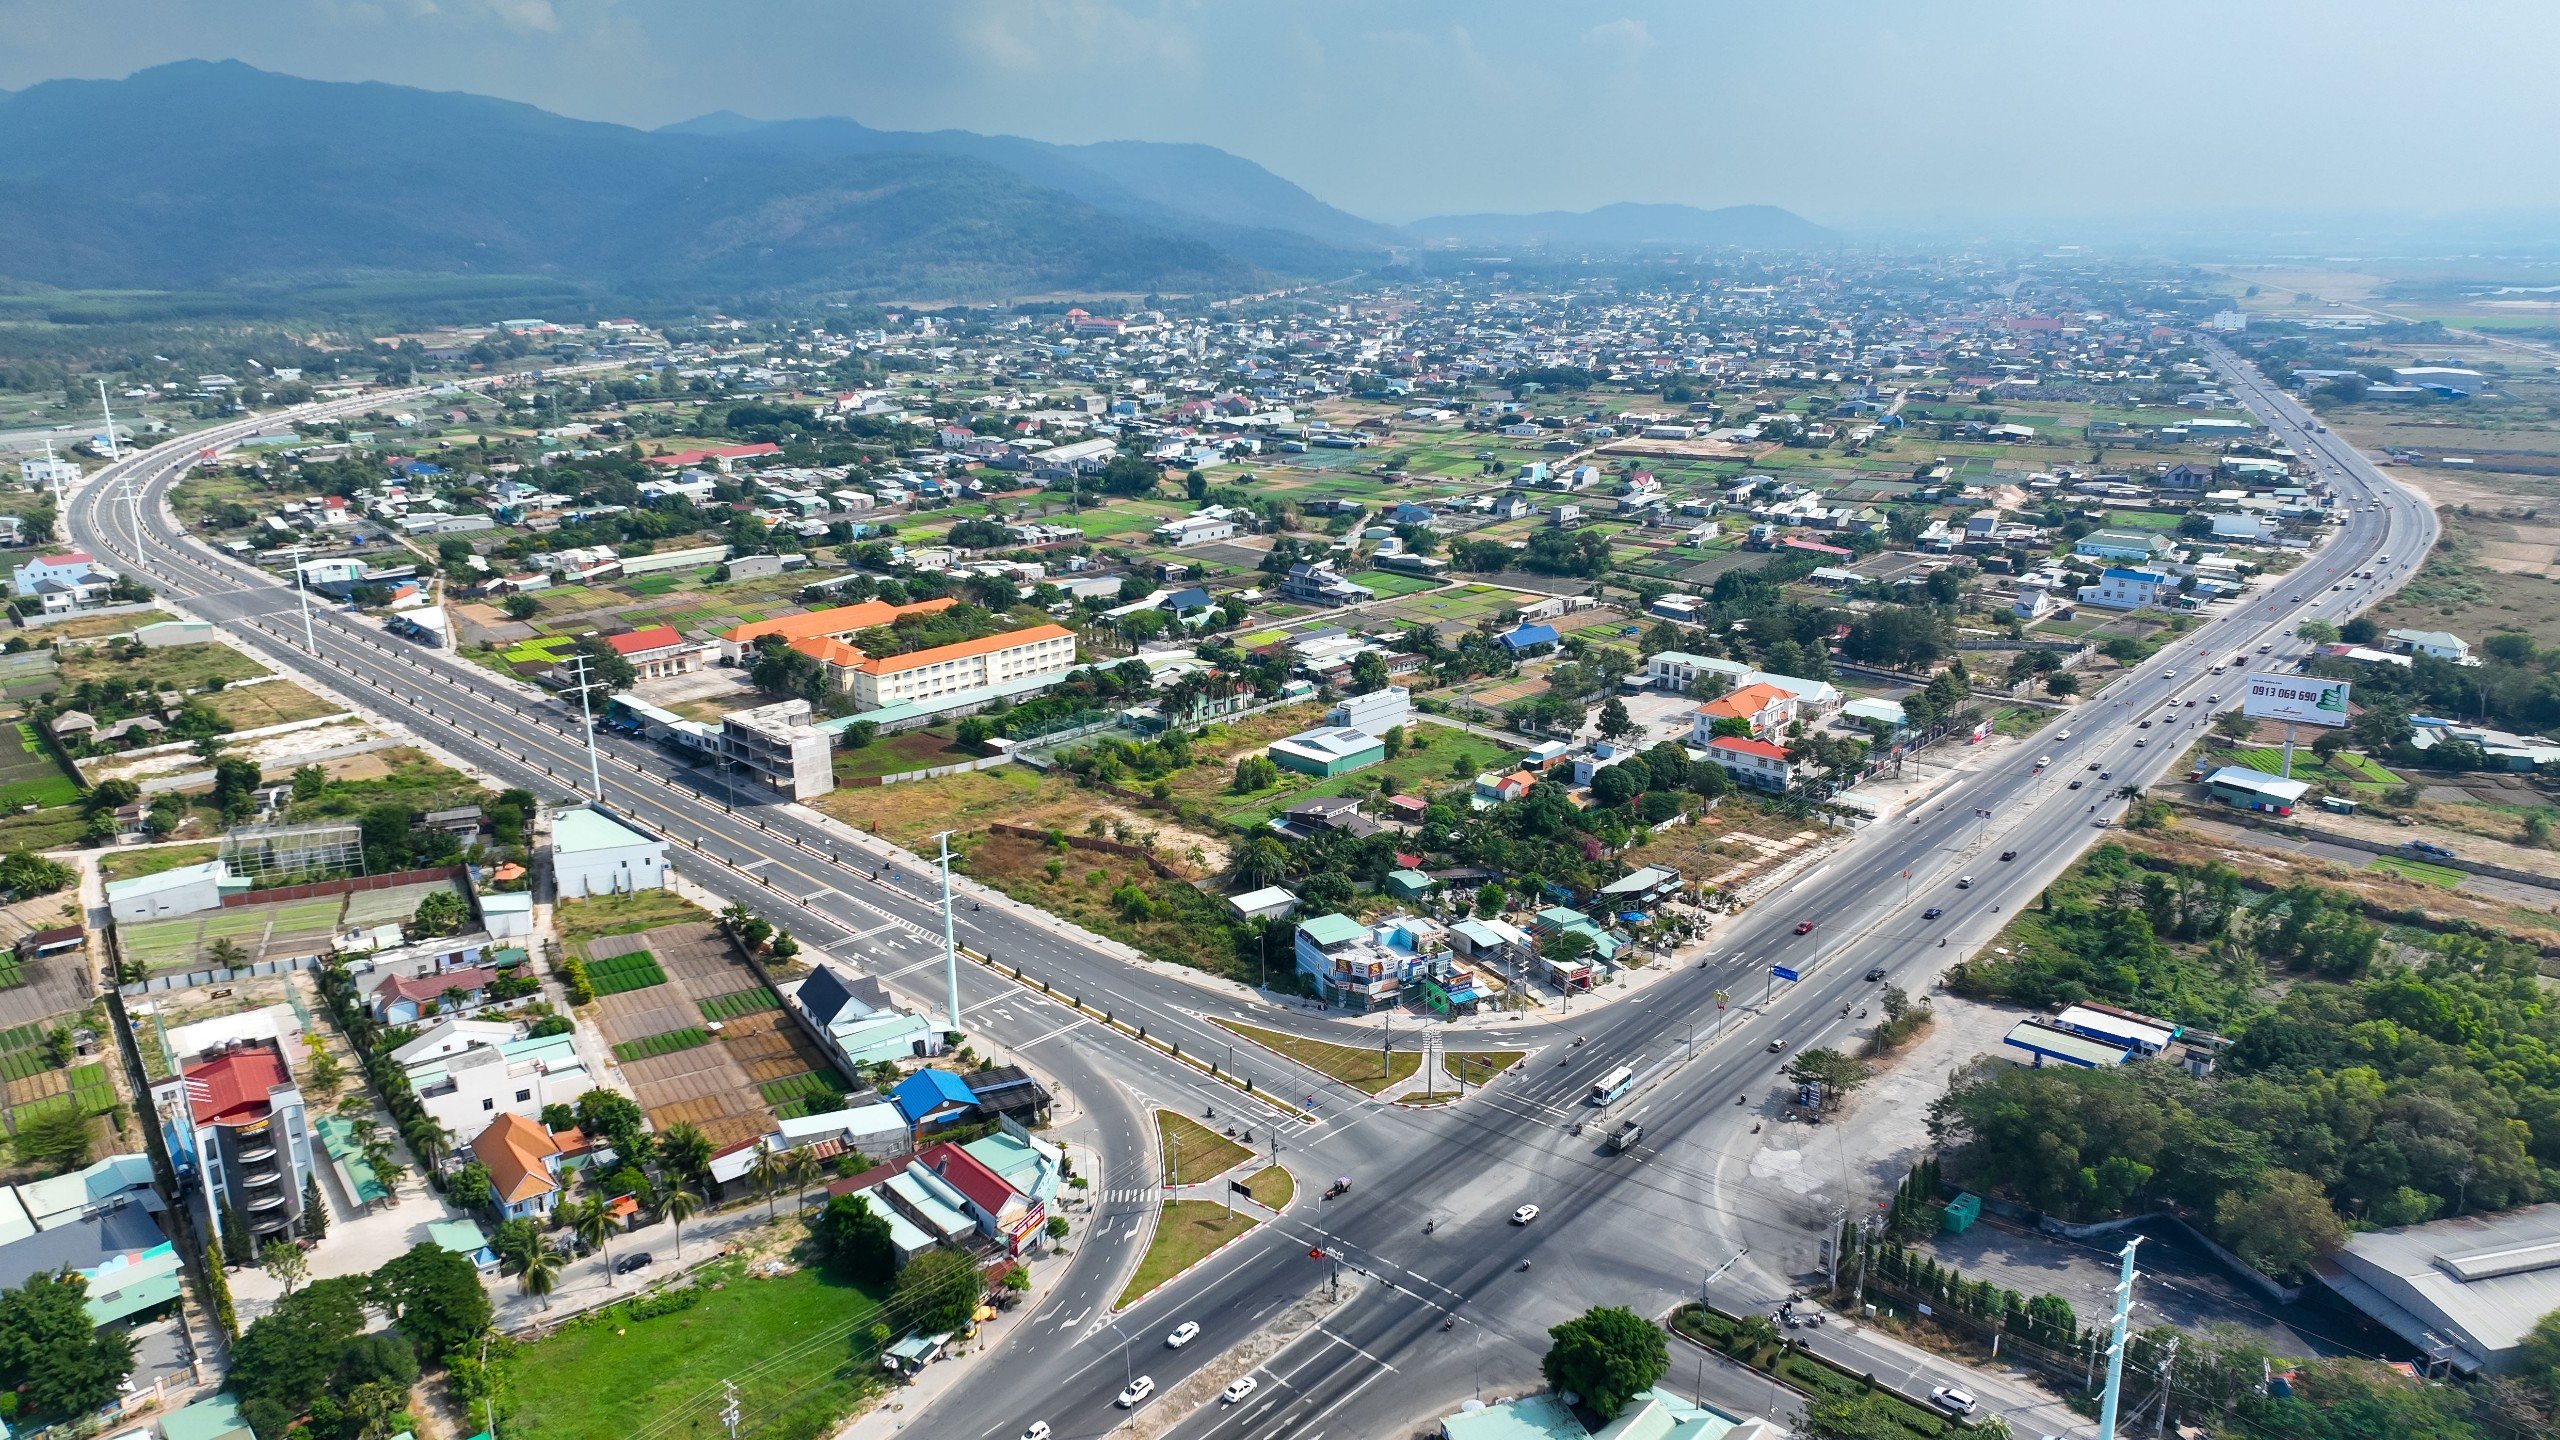 Thành phố Phú Mỹ thành lập trên cơ sở nguyên trạng toàn bộ diện tích tự nhiên, quy mô dân số và 10 đơn vị hành chính cấp xã trực thuộc của thị xã Phú Mỹ.